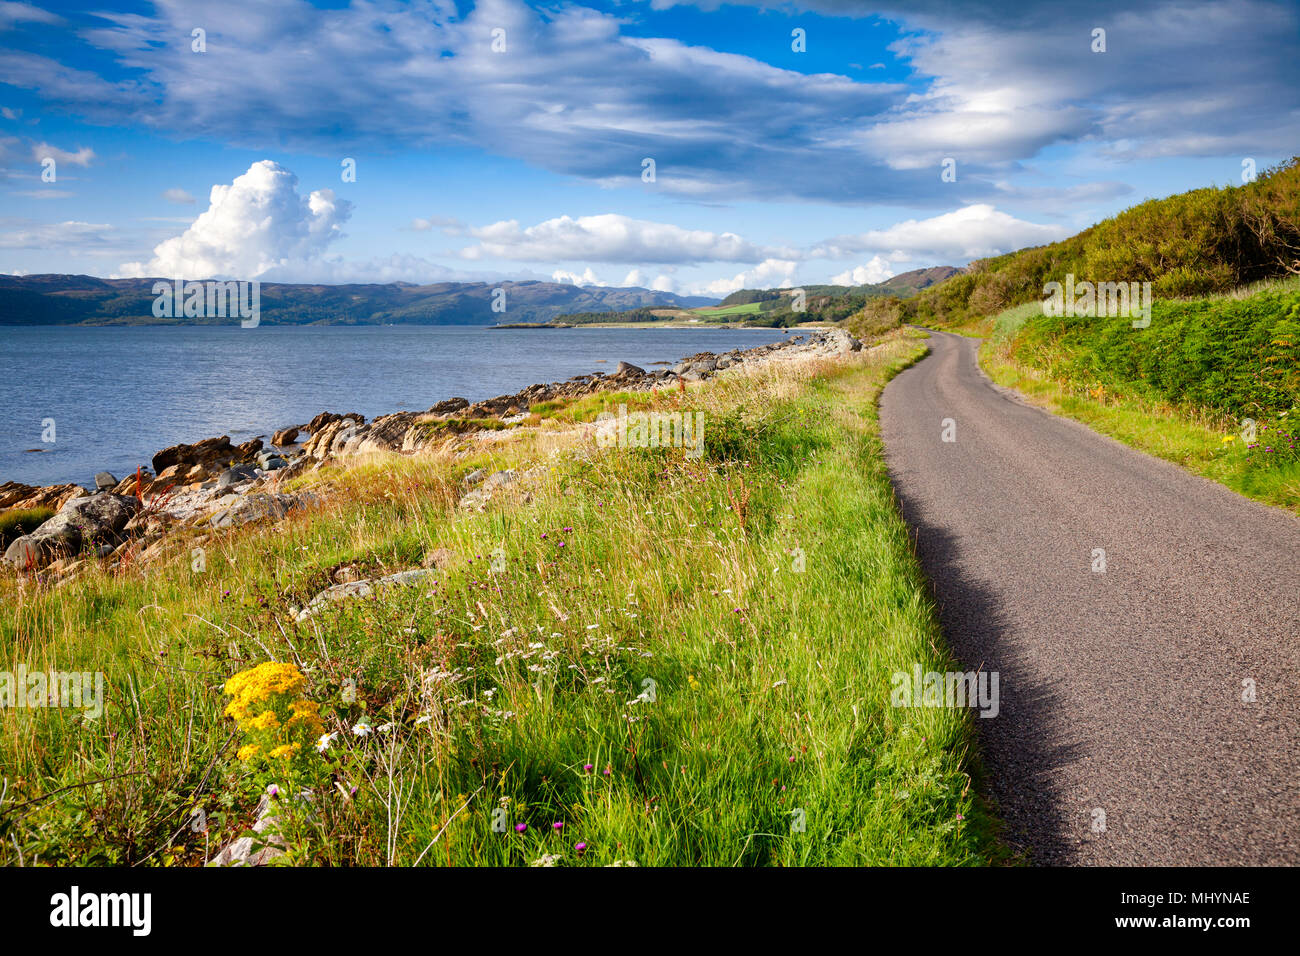 Schöne kurvenreiche Straße entlang dem Meer Loch Caolisport an der Halbinsel Kintyre, Argyll und Bute, Schottland, Großbritannien Stockfoto